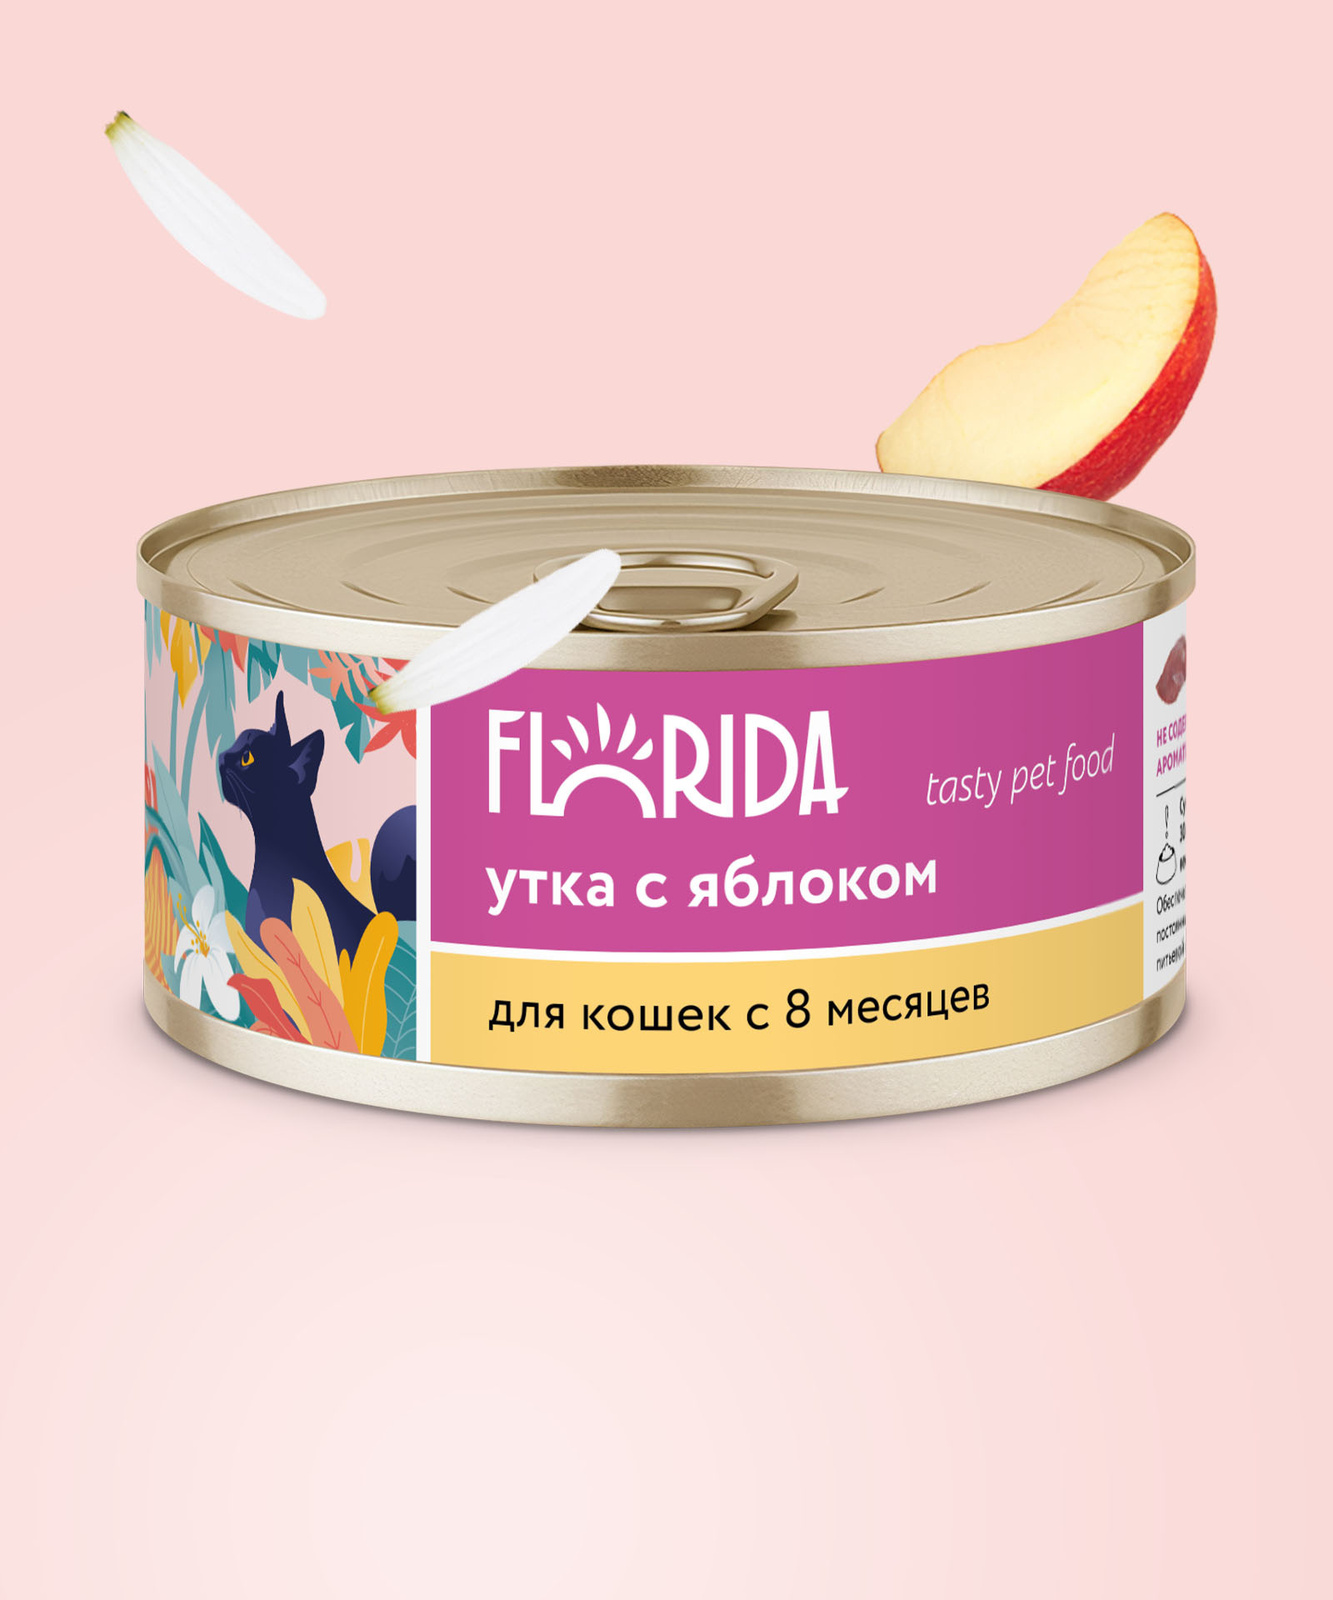 FLORIDA консервы FLORIDA консервы для кошек Утка с яблоком (100 г)